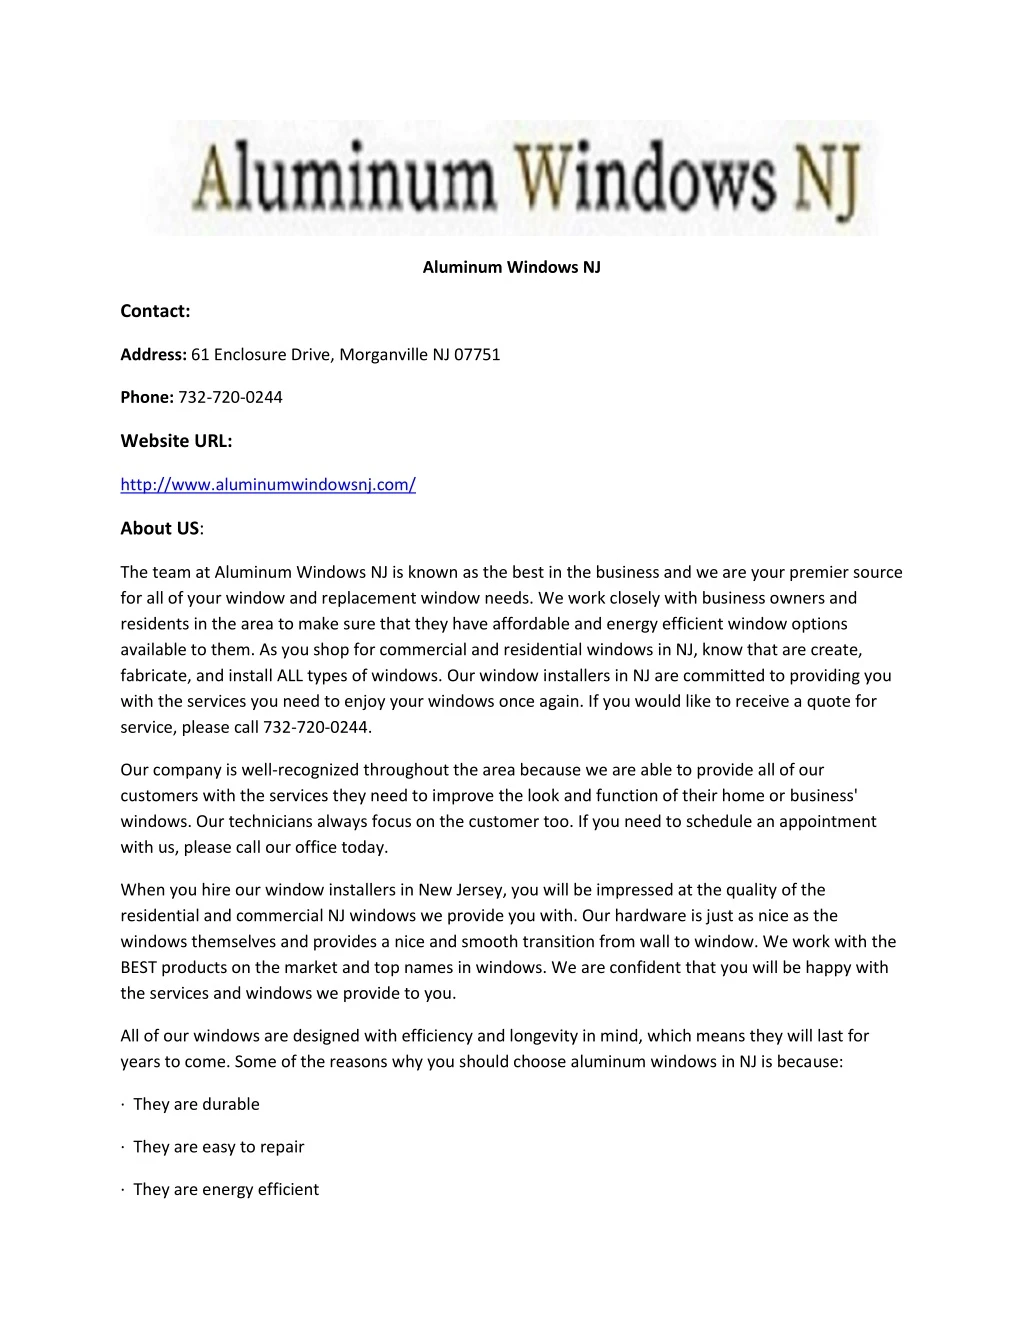 aluminum windows nj